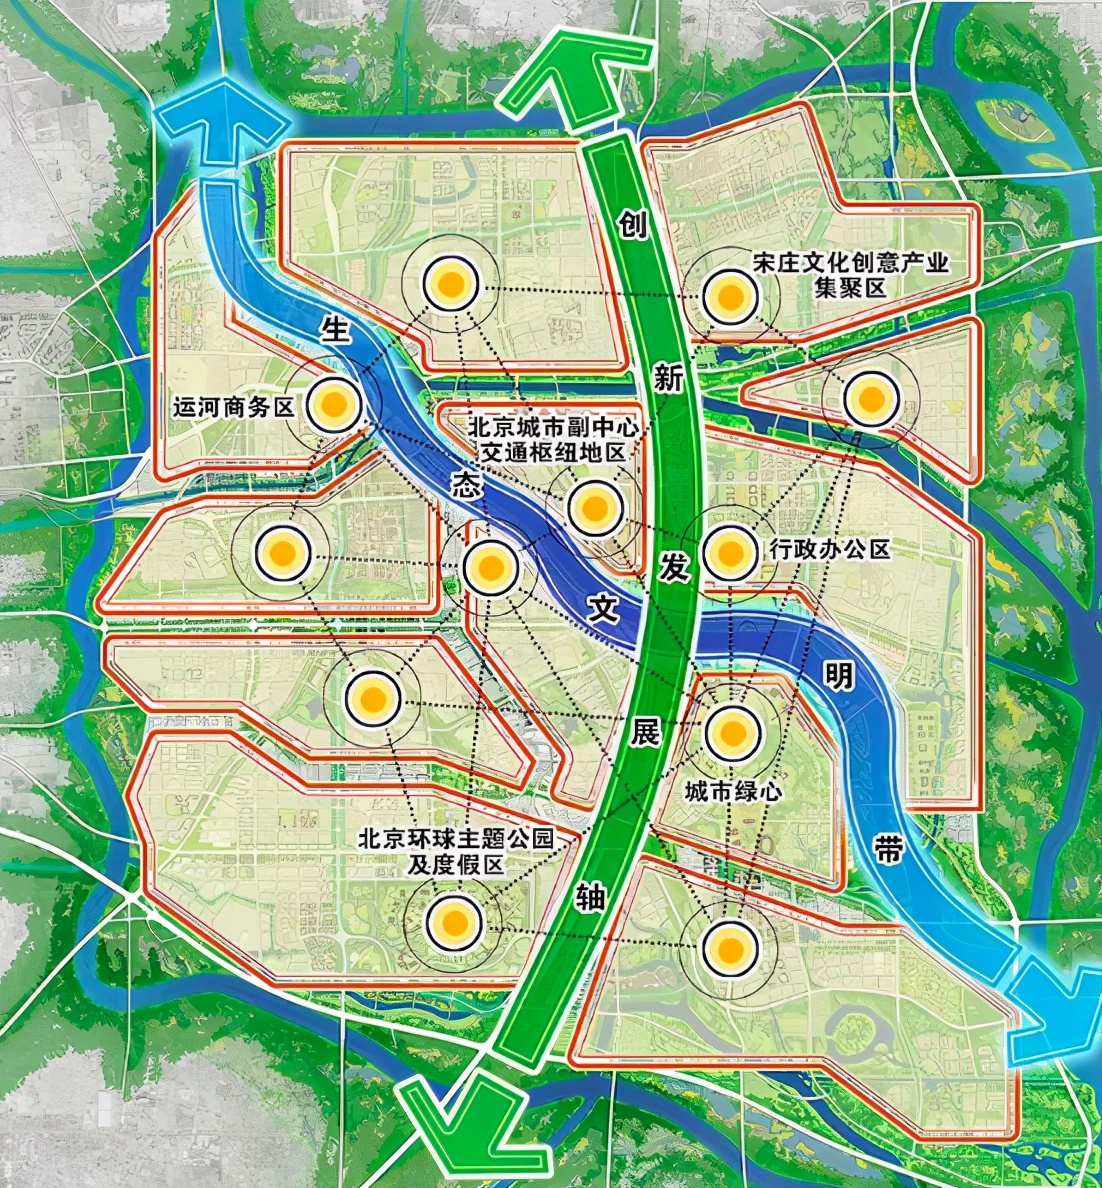 北京城市副中心范围图片